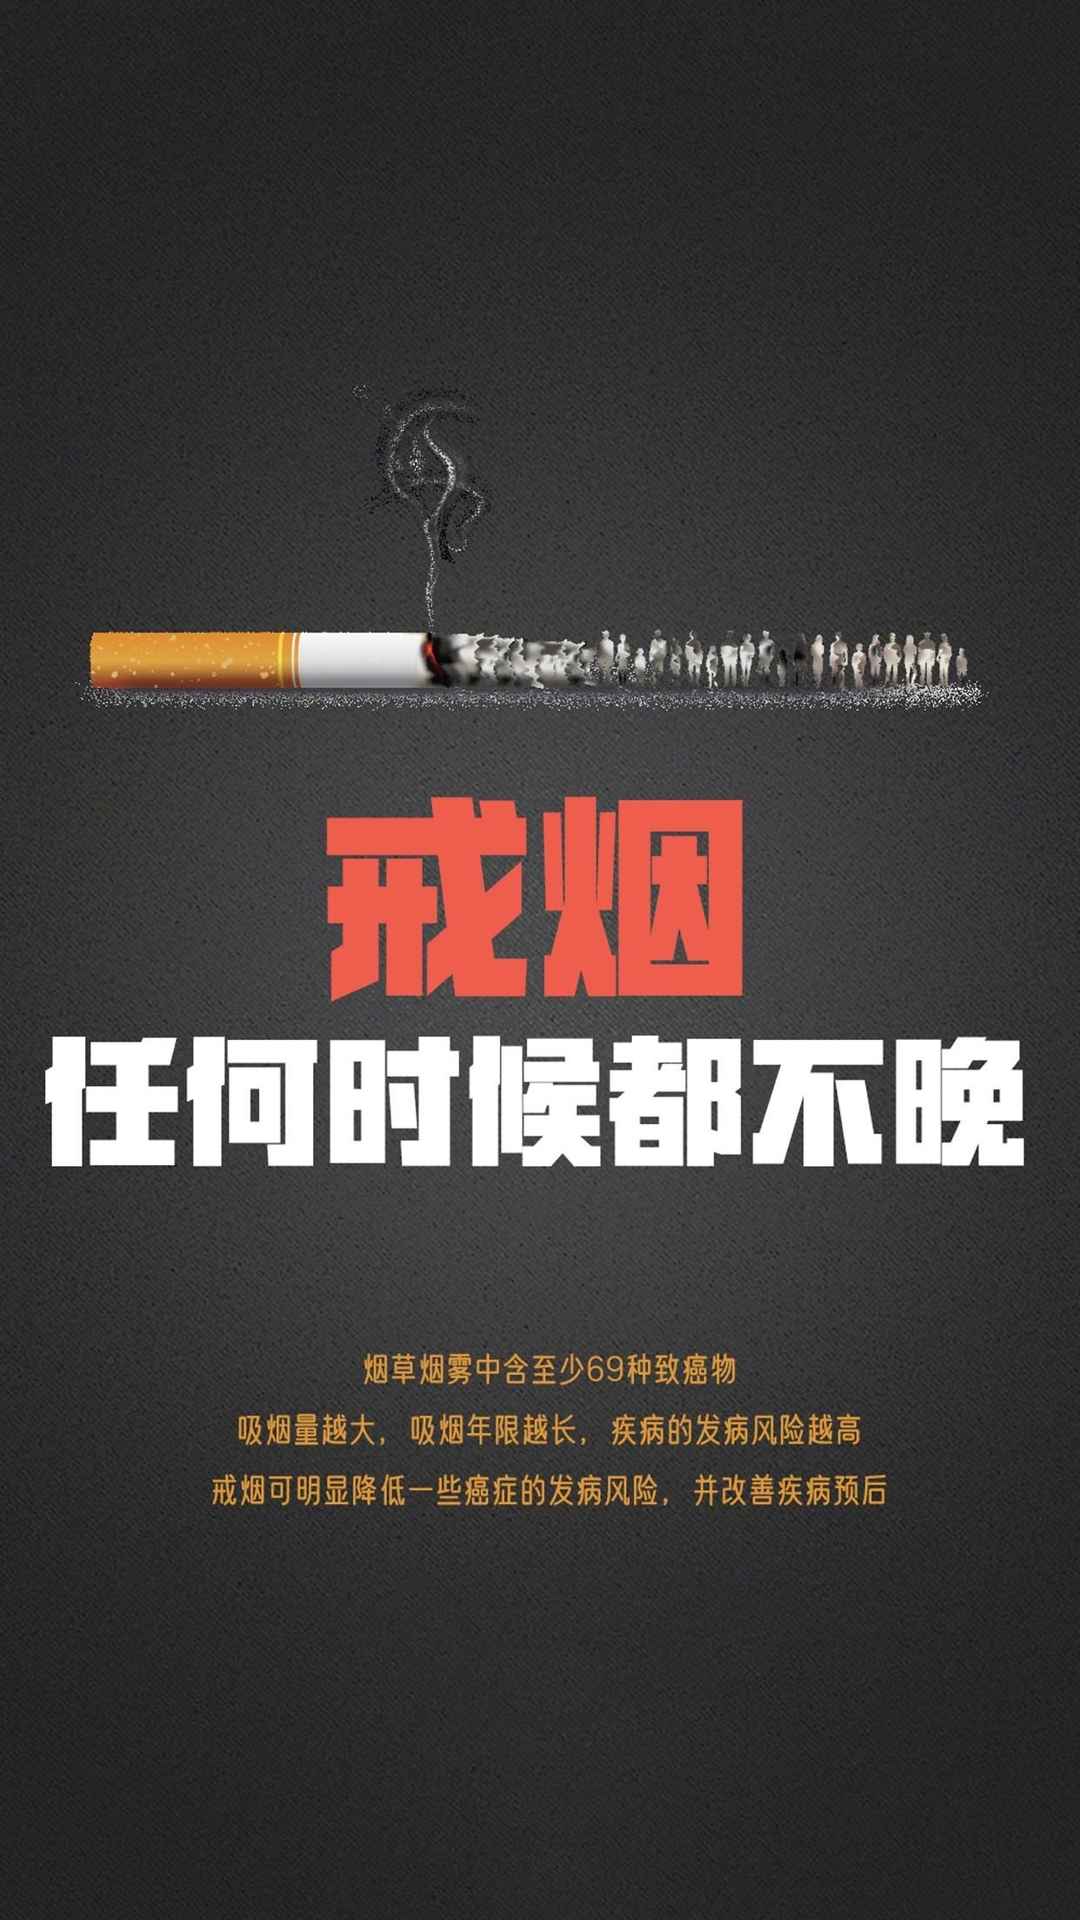 禁烟”世界无烟手机壁纸-